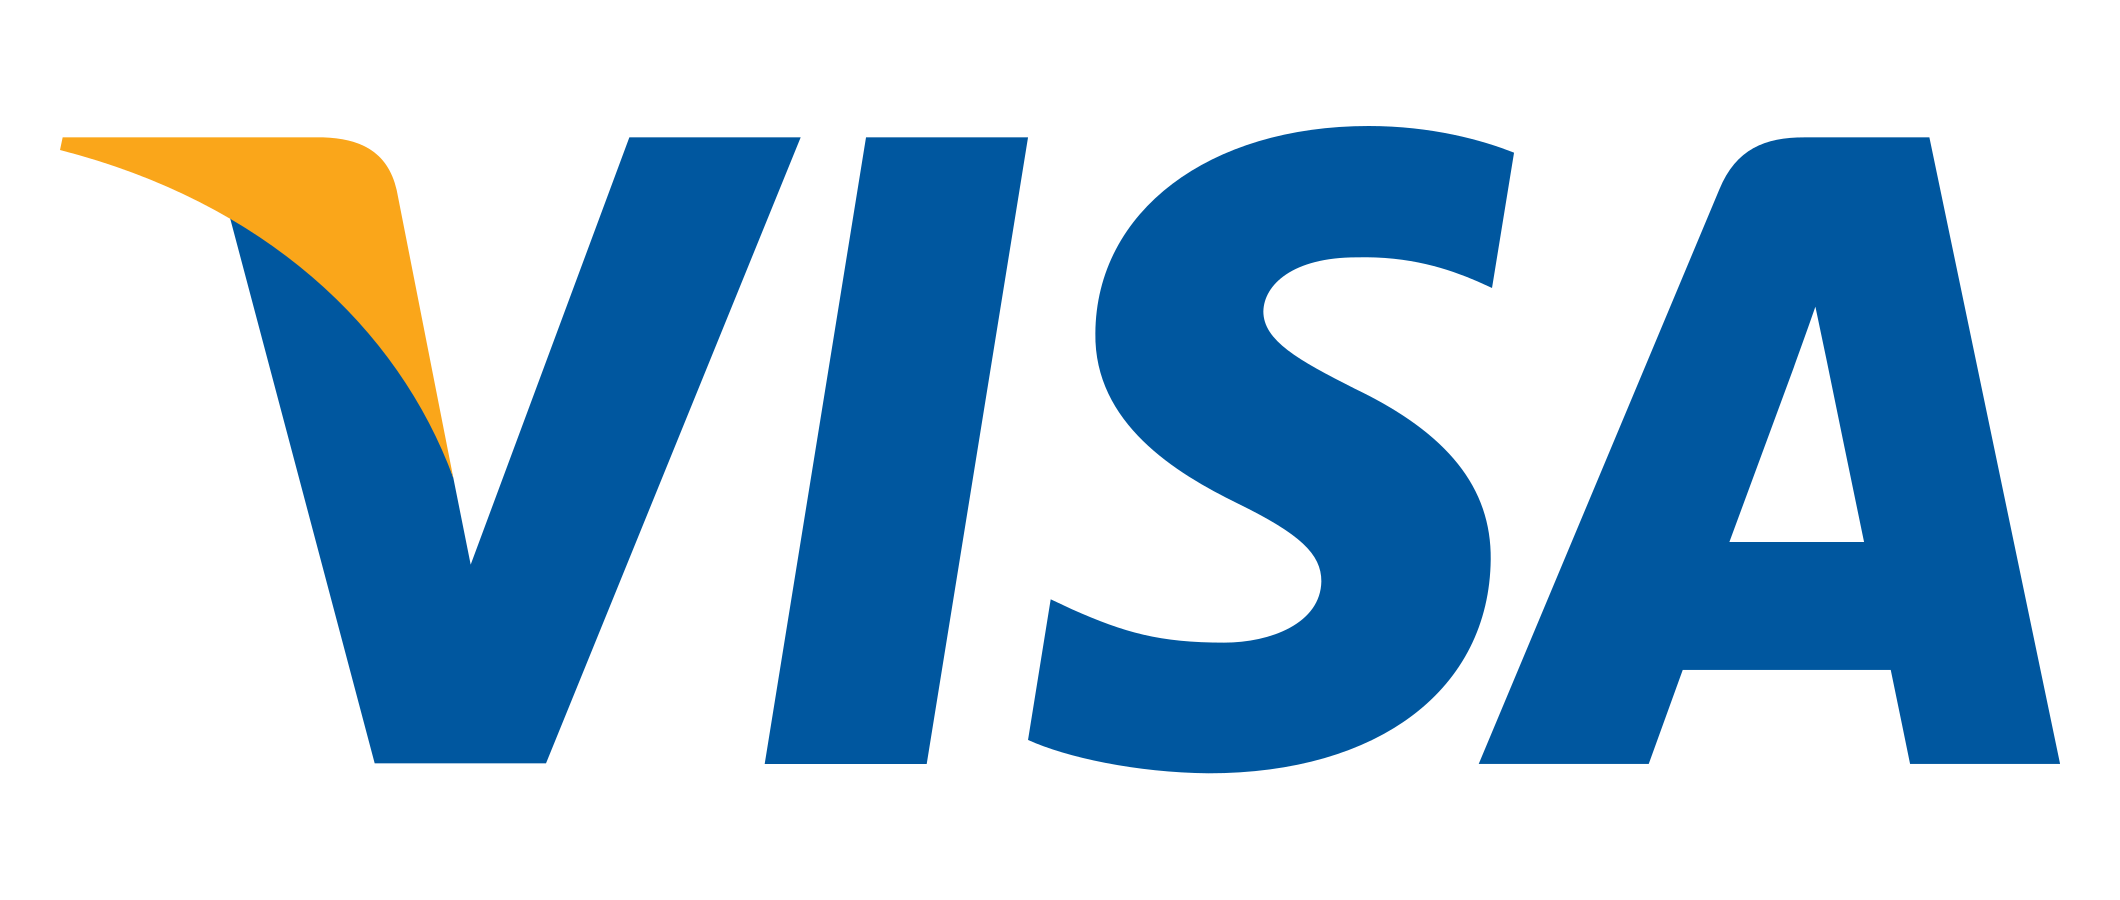 Visa login